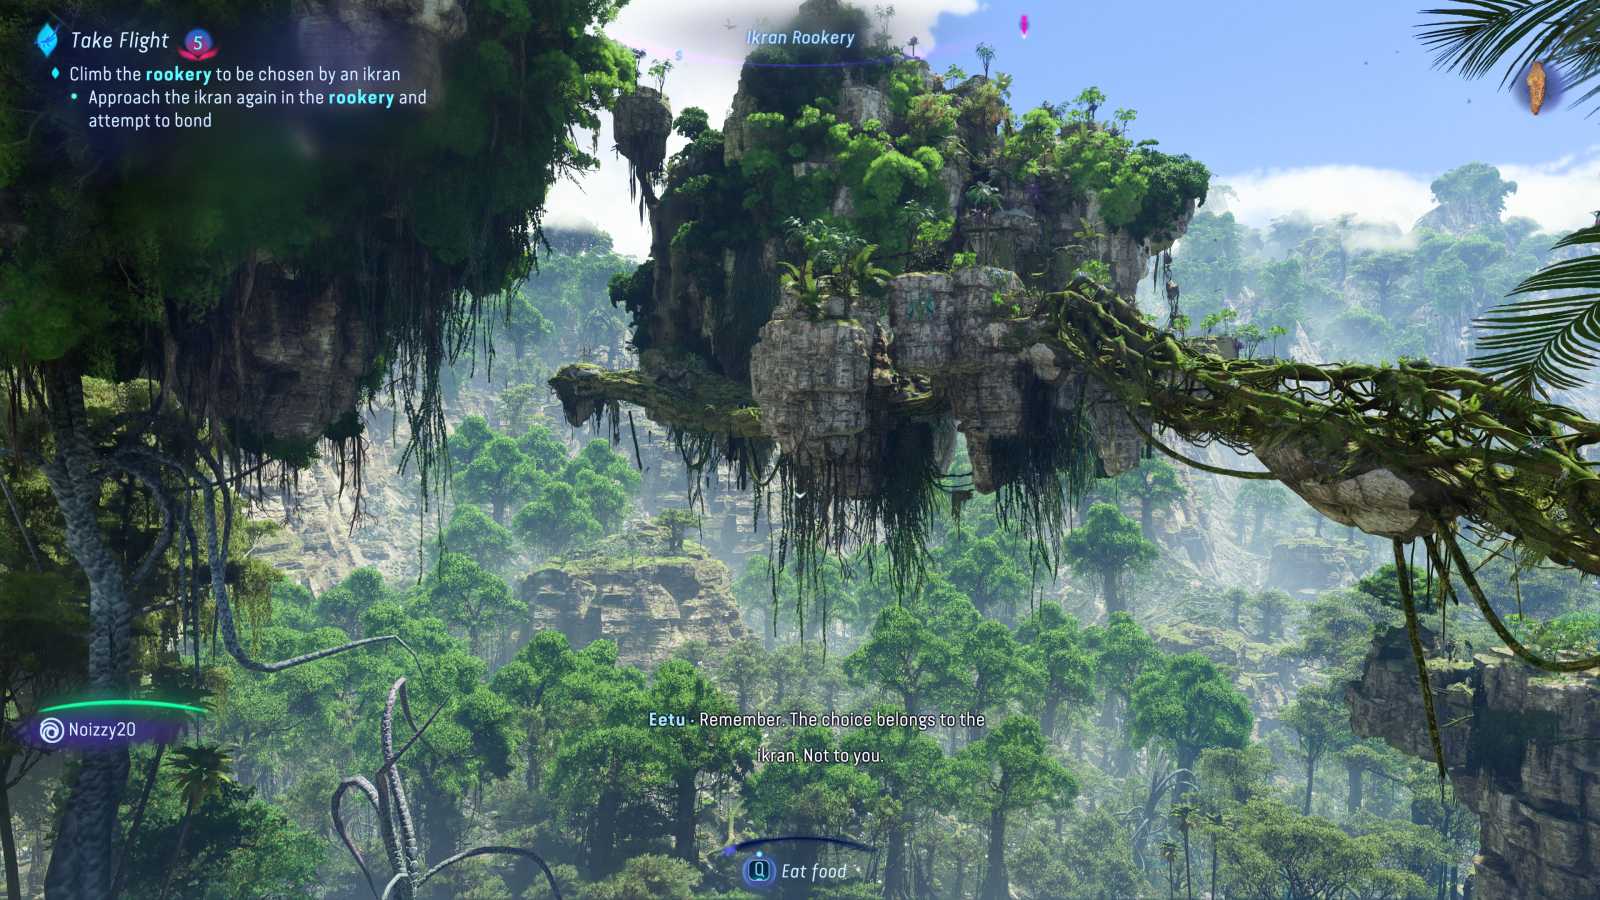 Recenze s odstupem - Avatar: Frontiers of Pandora, překrásná Ubisoftí hra